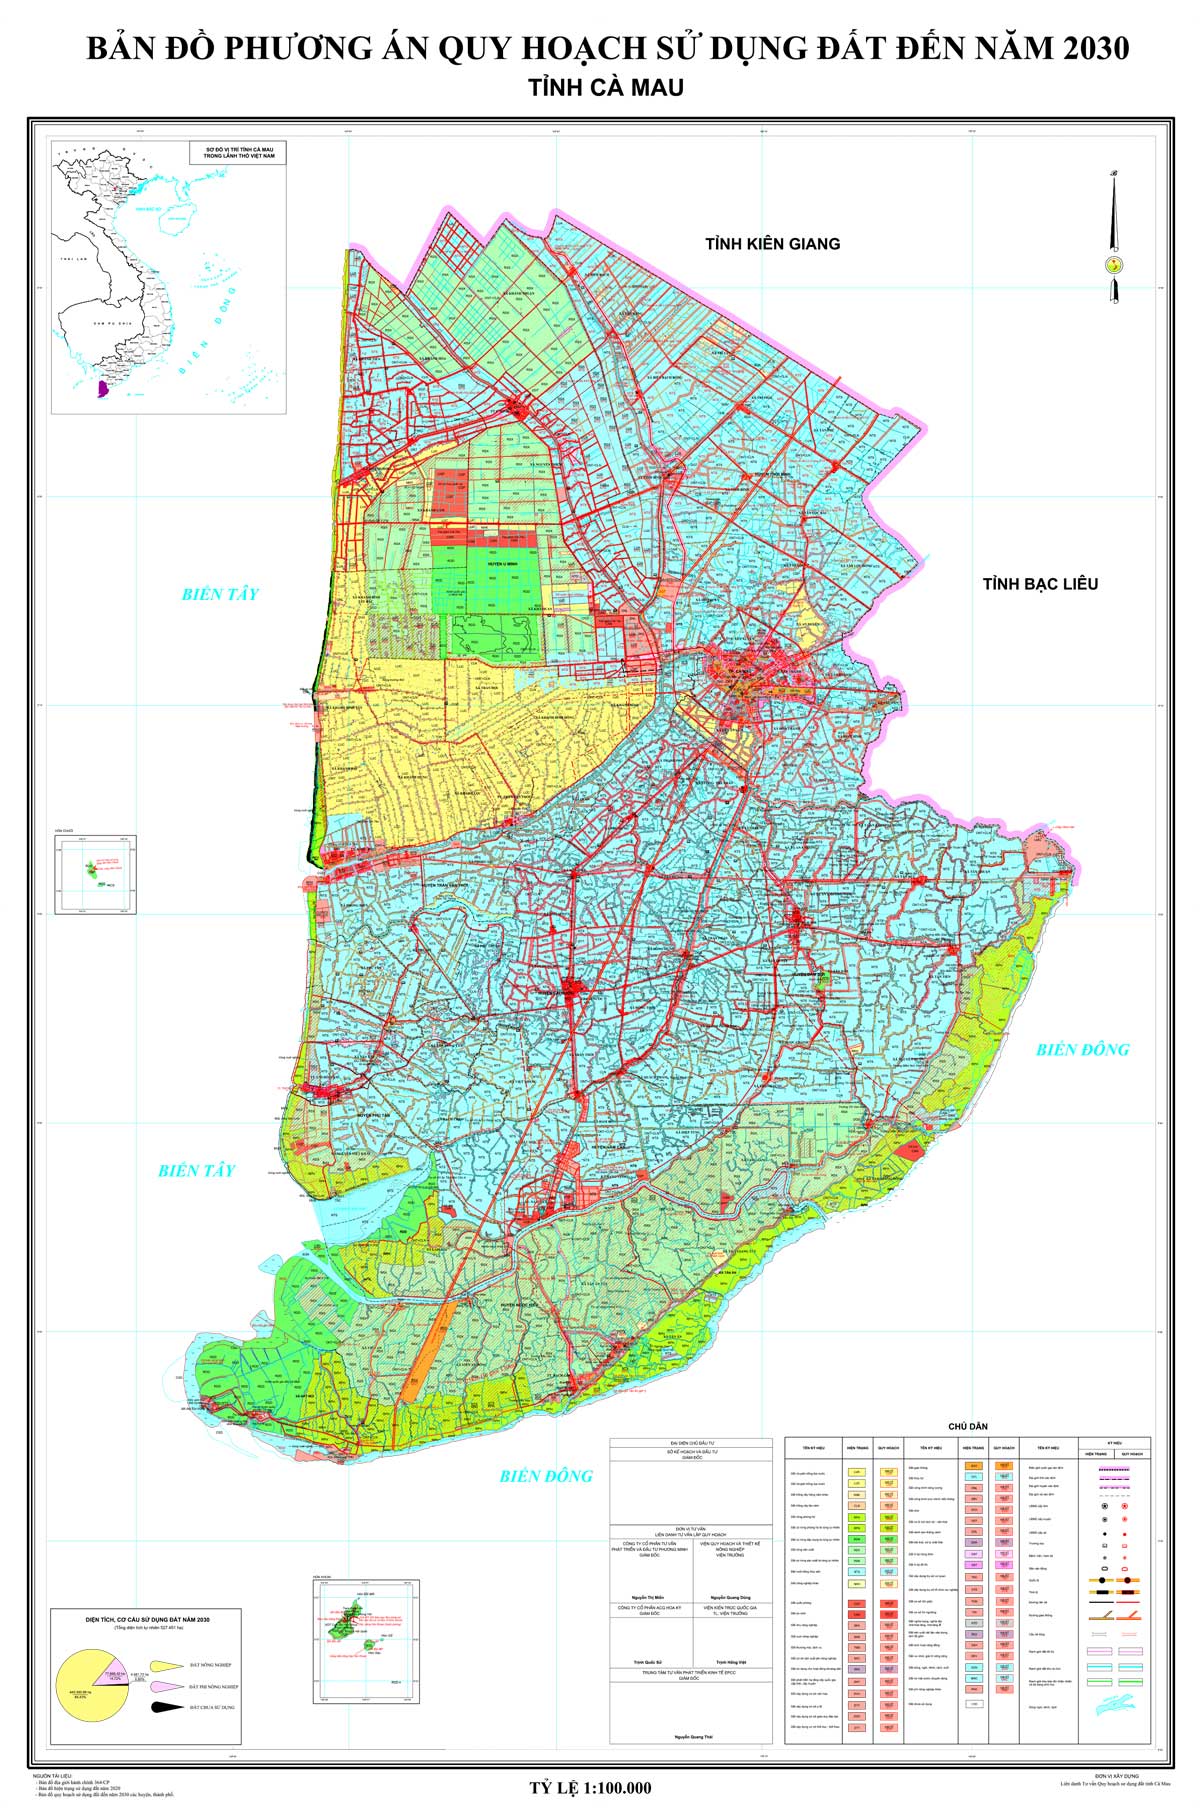 Bản đồ phương án QHSDĐ tỉnh Cà Mau đến năm 2030